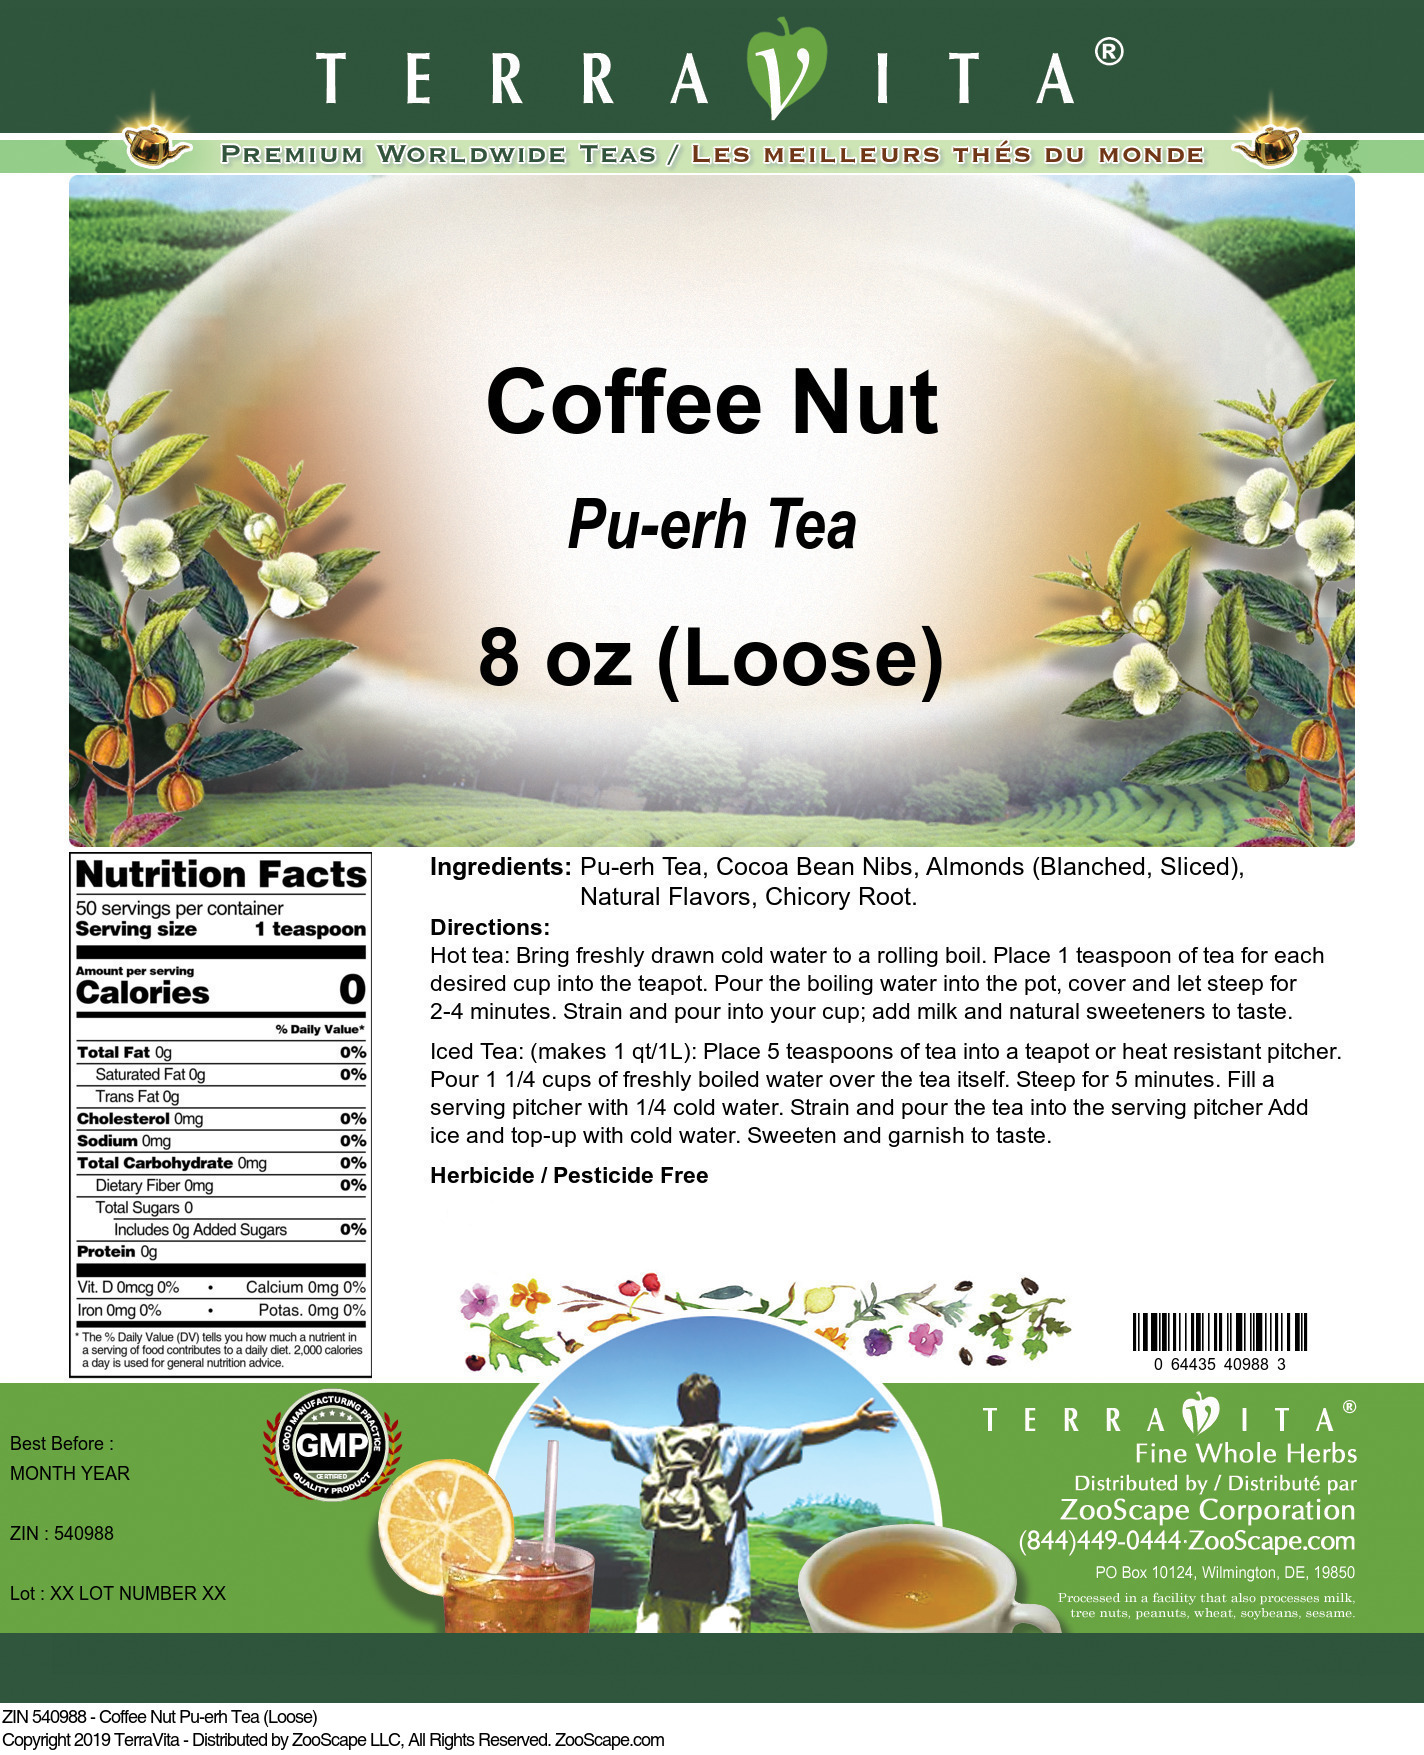 Coffee Nut Pu-erh Tea (Loose) - Label